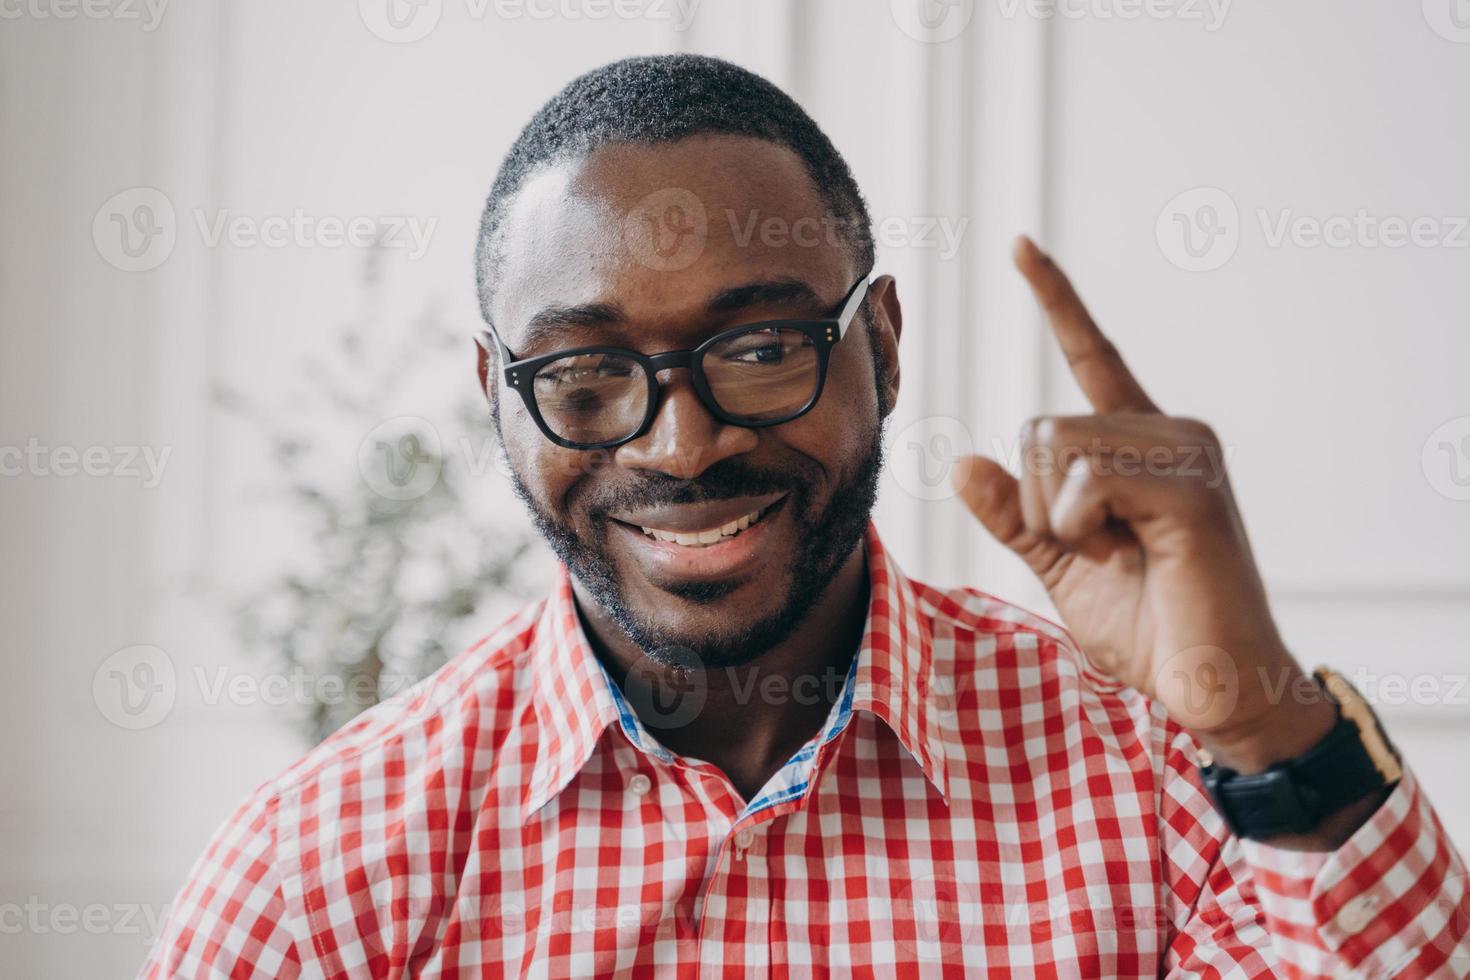 professor de inglês masculino de etnia africana sorridente em óculos levanta a mão aponta com o dedo indicador para cima foto